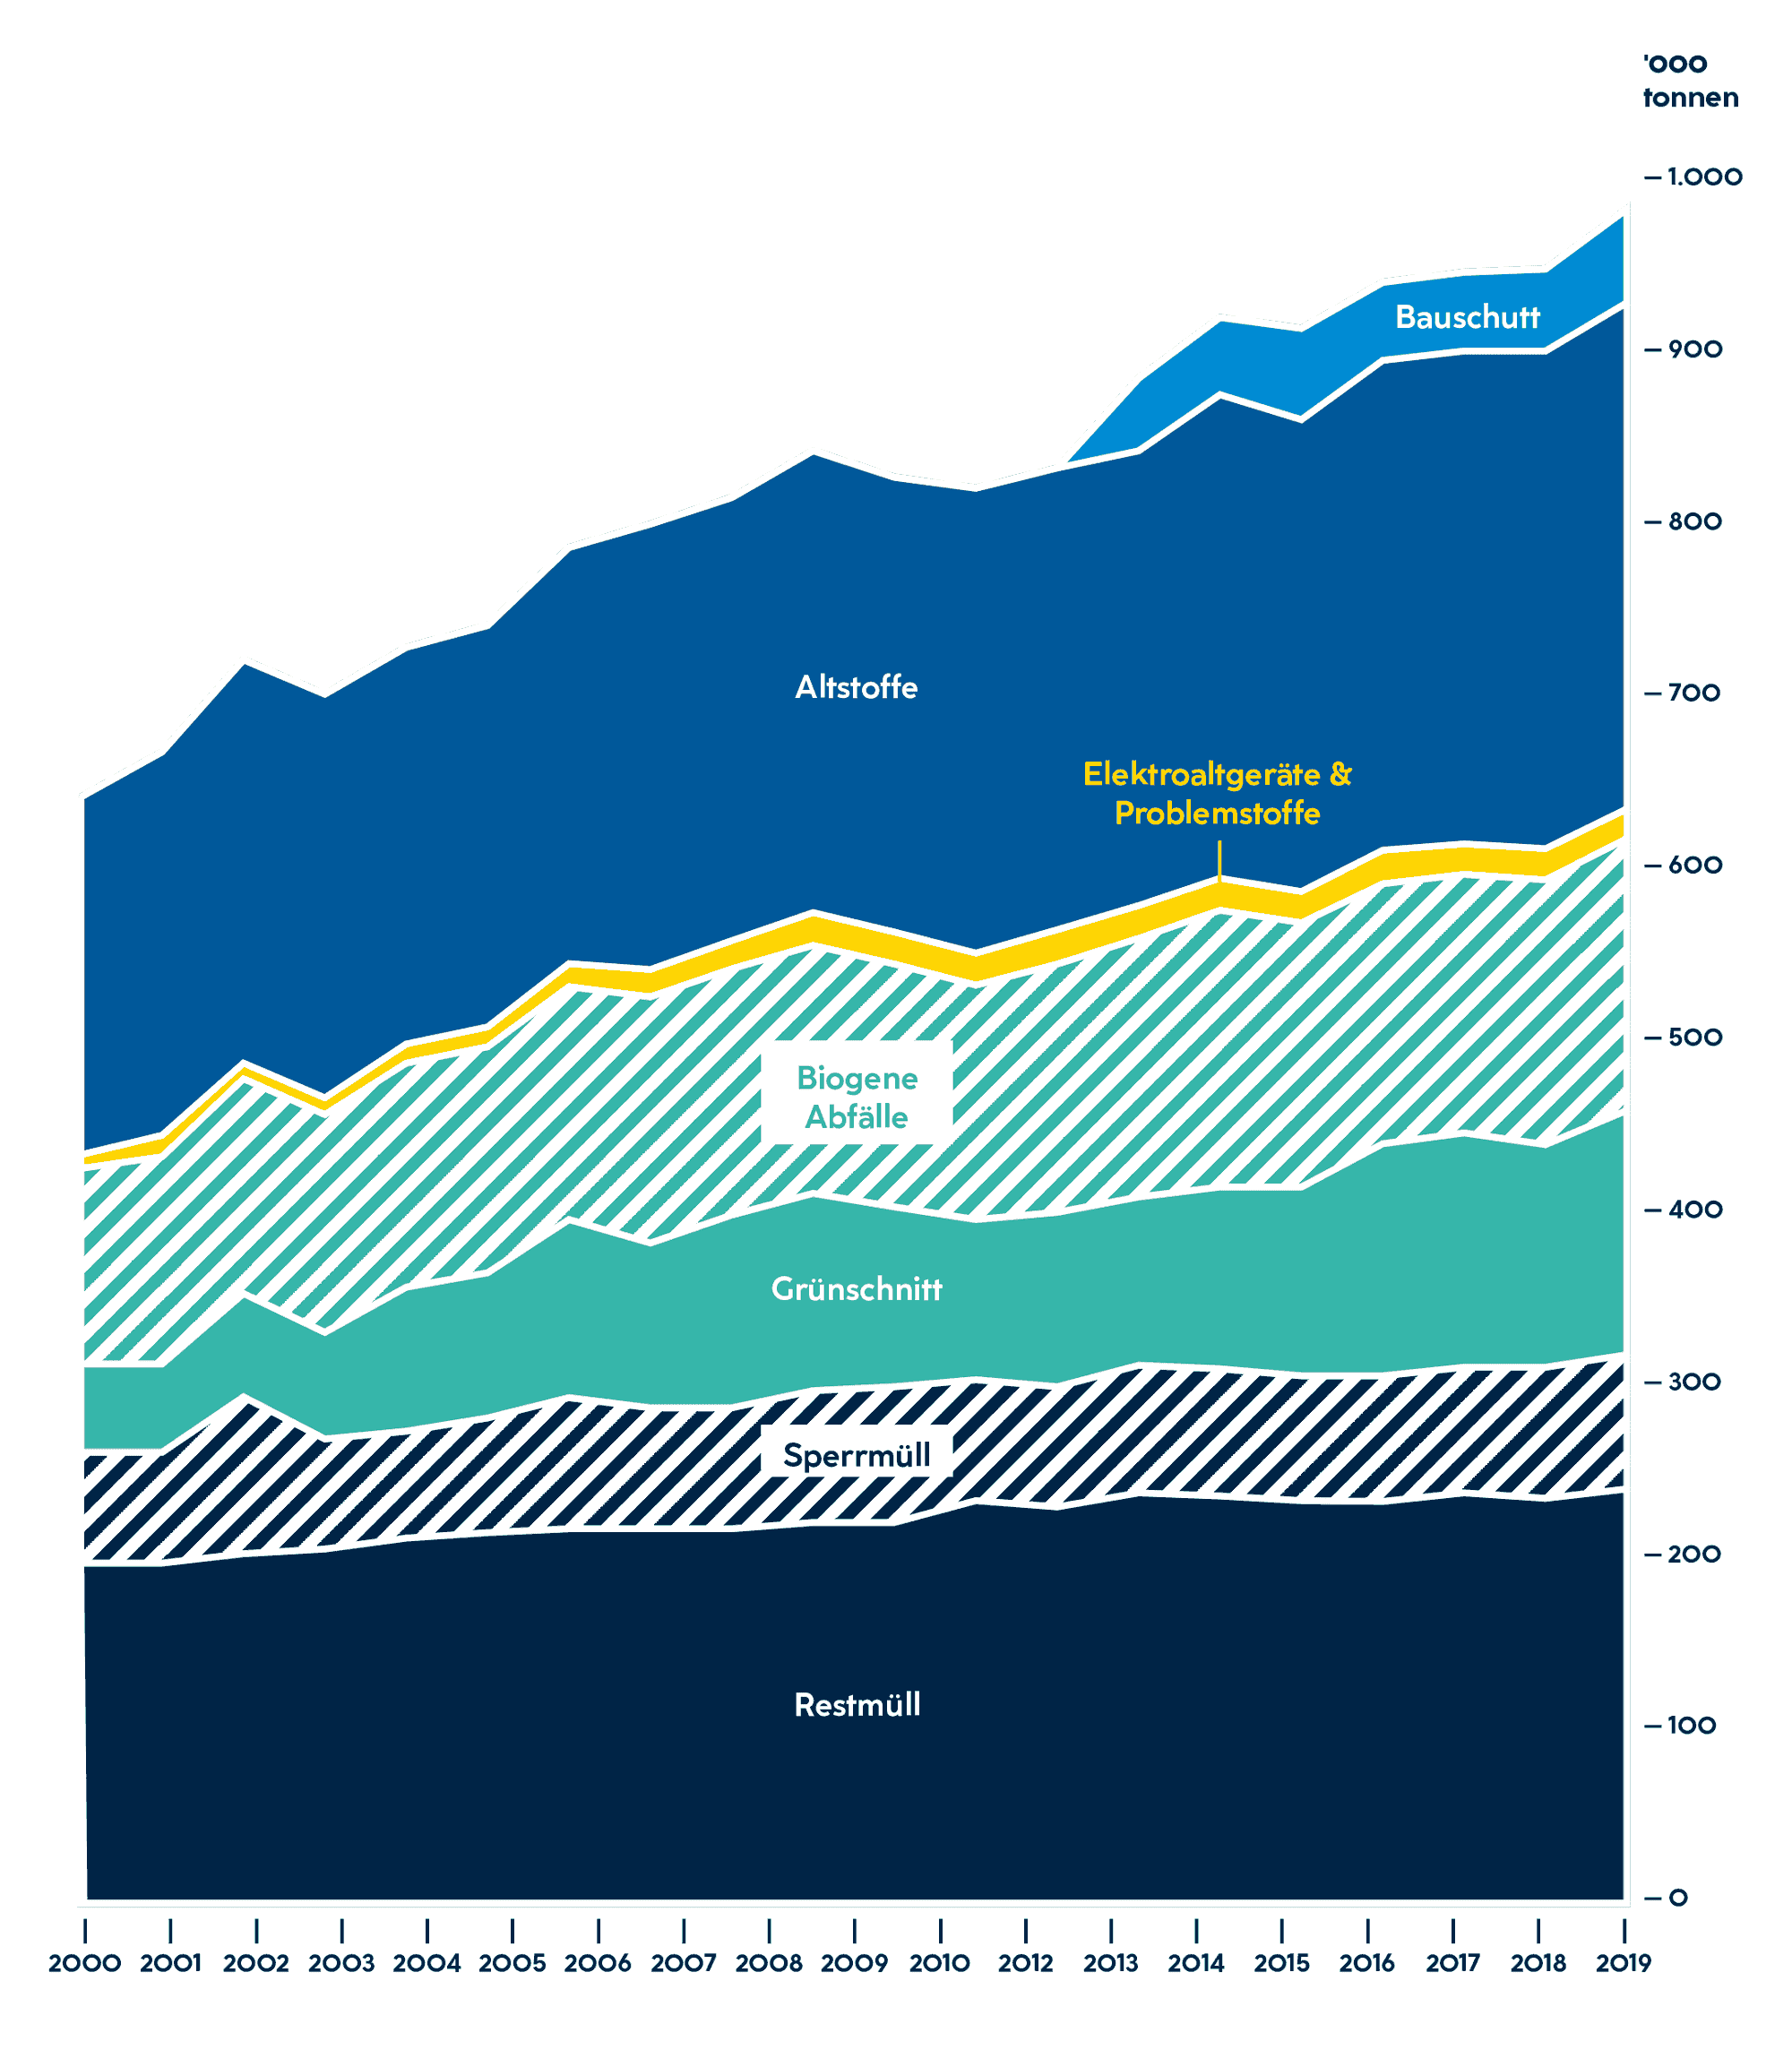 Die Grafik zeigt die Entwicklung der Abfallmengen in Niederösterreich, in tausend Tonnen zwischen 2000 und 2019. Ähnlich wie beim Energiebedarf ist auch die Gesamtabfallmenge im Gleichschritt mit dem Bruttoregionalprodukt und der Bevölkerung gewachsen. Vor allem der Anteil von Grünschnitt an der Gesamtabfallmenge hat in den letzten zwei Jahrzehnten zugenommen.